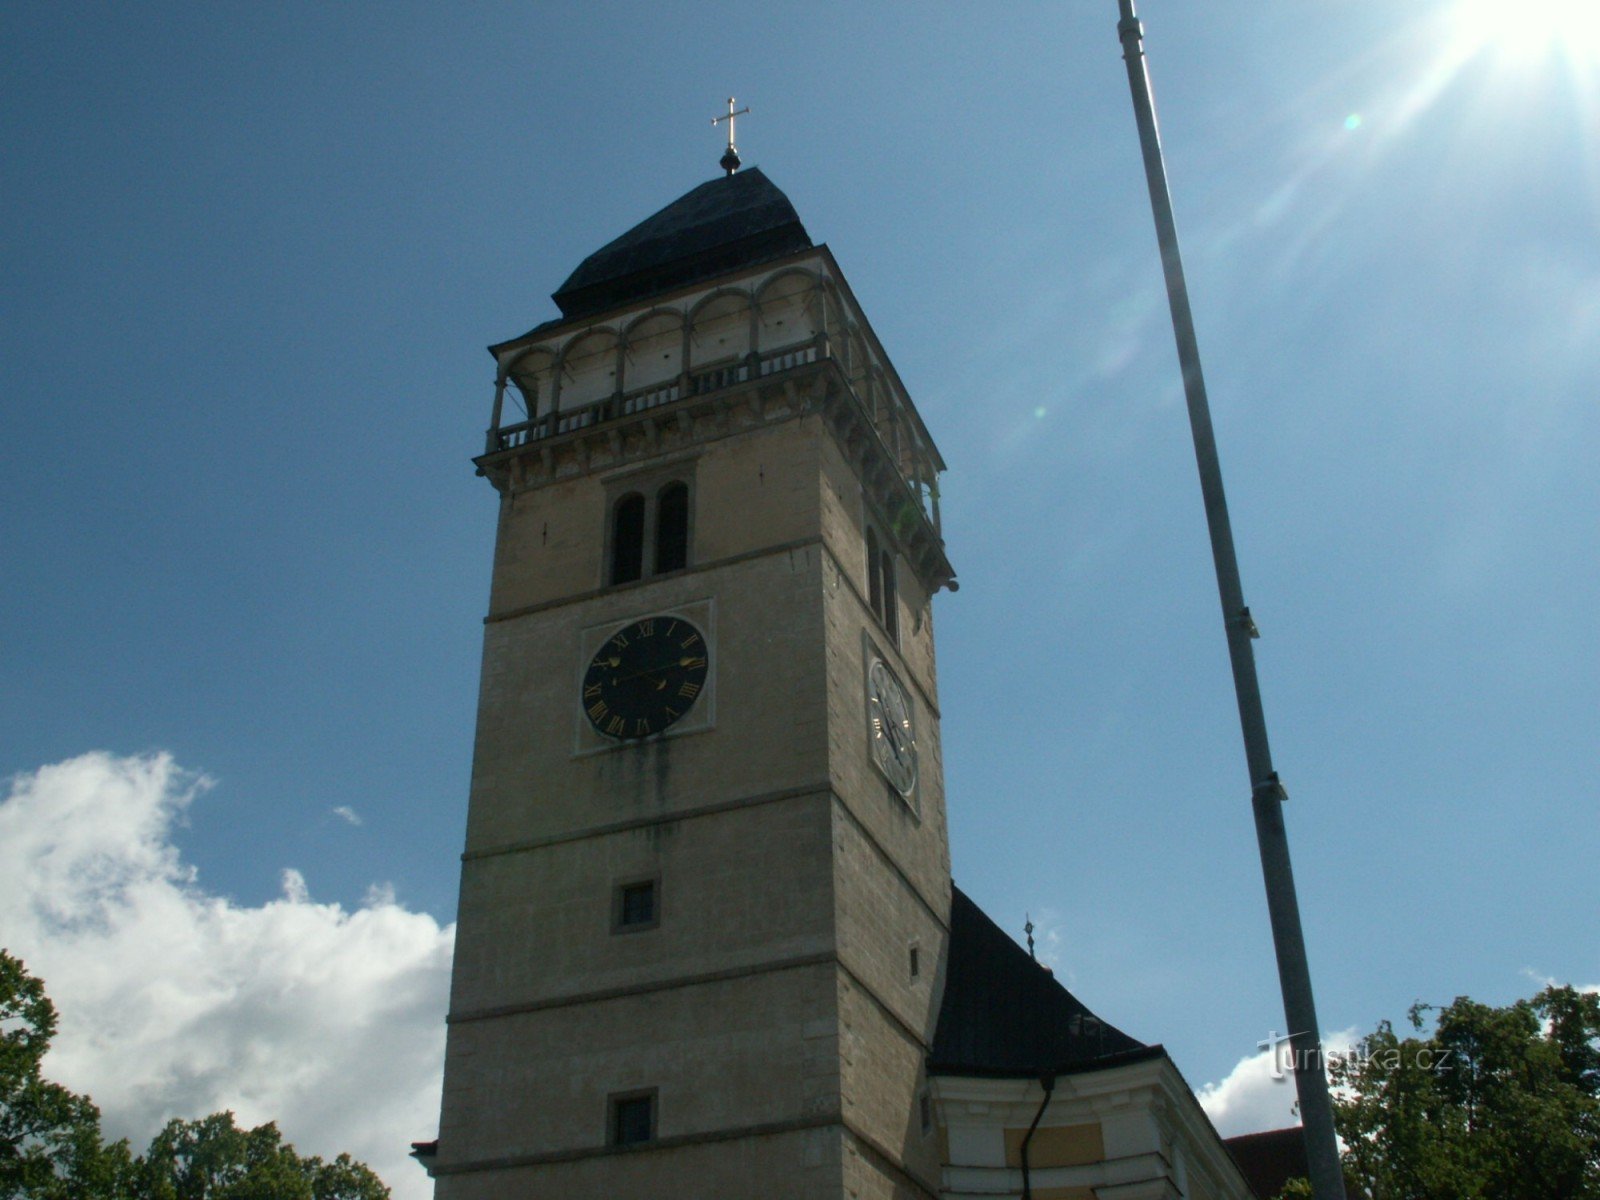 Det smukke renæssancetårn ved kirken St. Lawrence i Dačice. Efter at have klatret 150 trin til